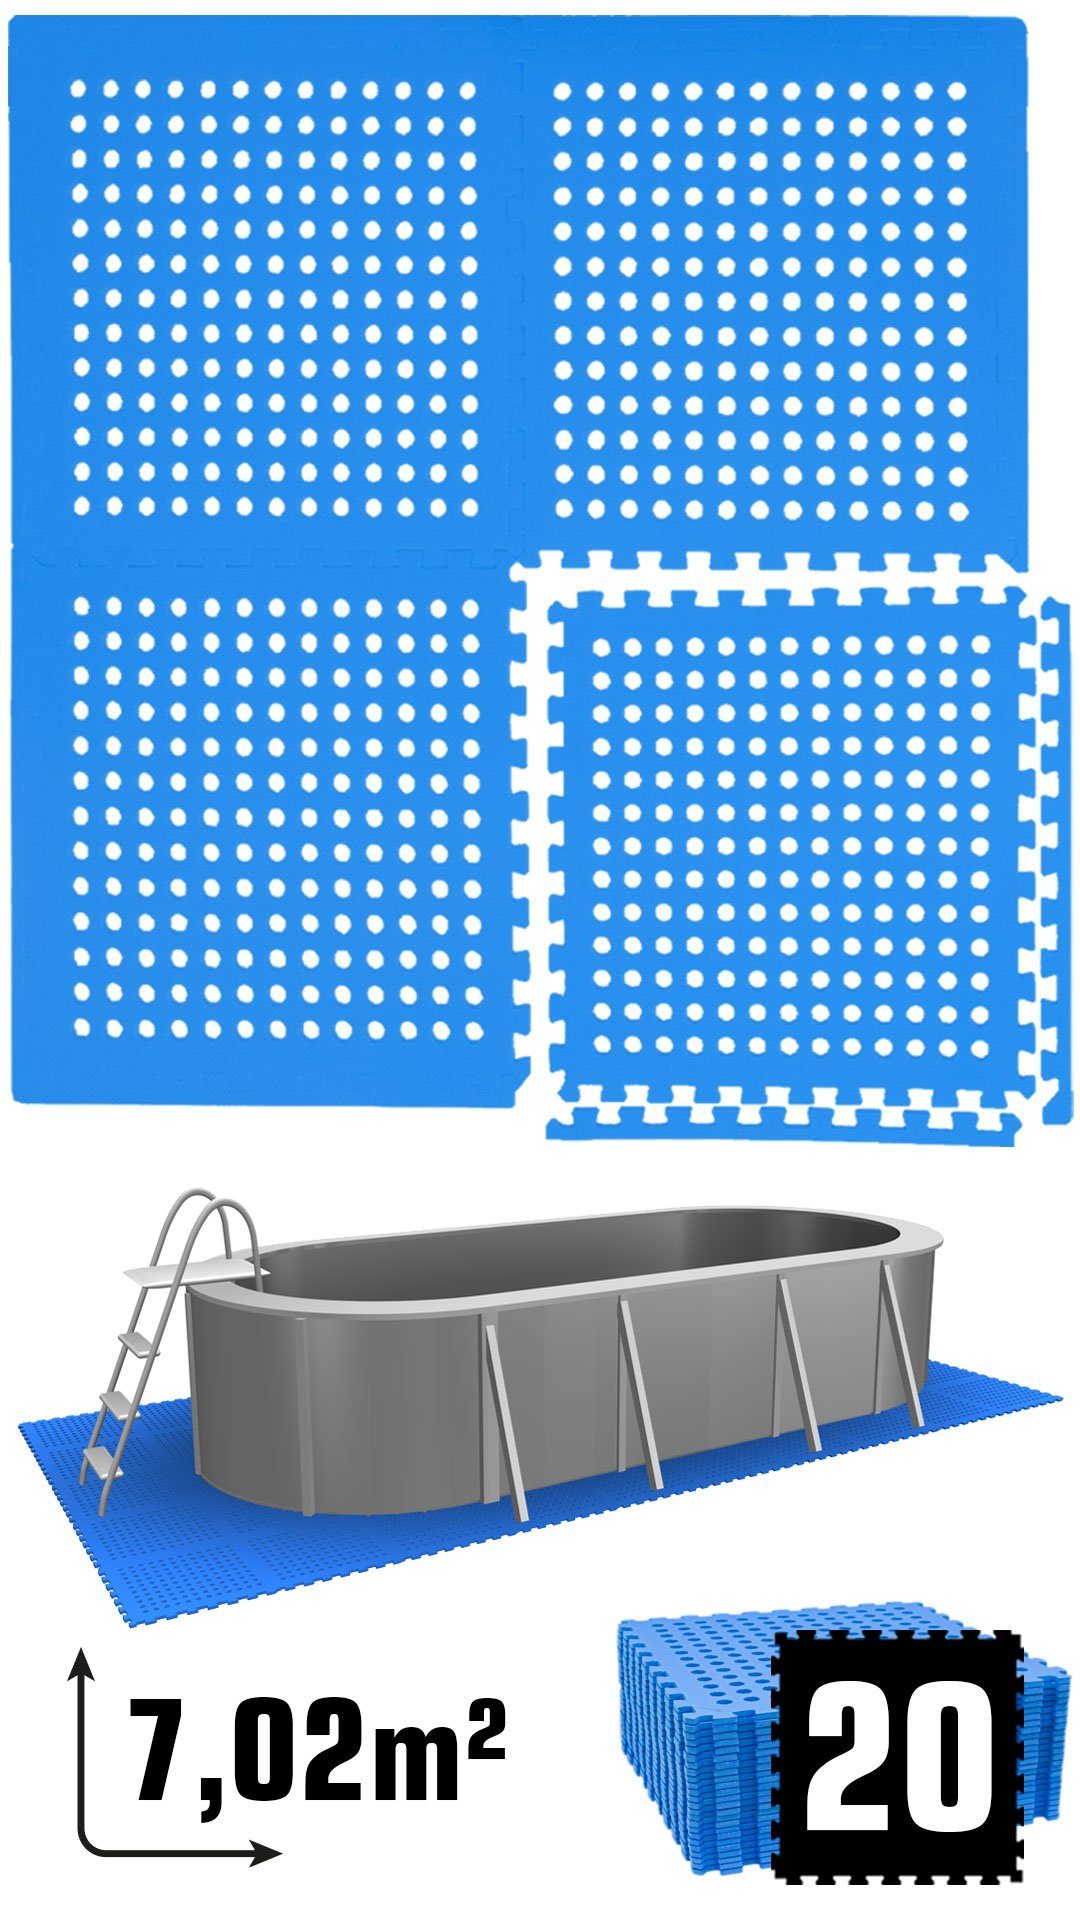 eyepower Bodenmatte 7 m² Poolunterlage 20 EVA Matten 62x62 Pool Set, Stecksystem rutschfest Blau